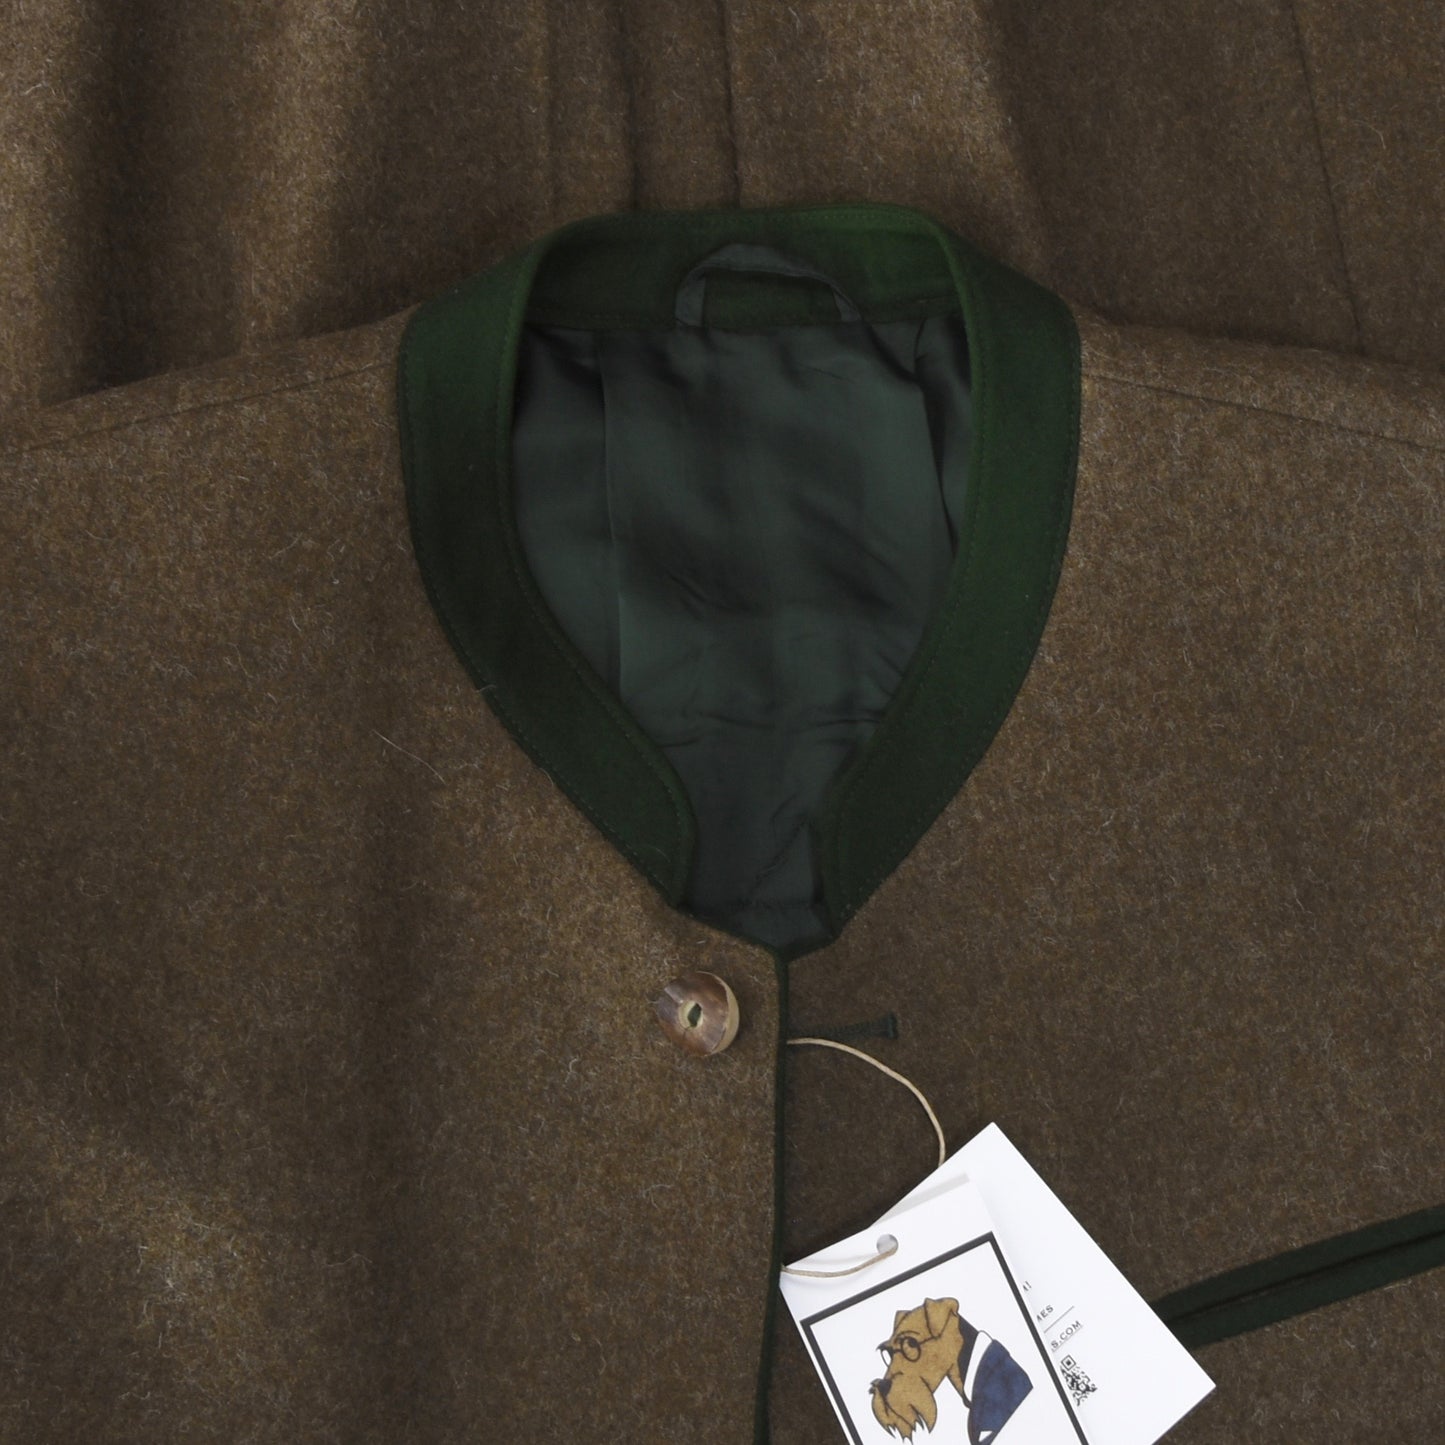 Klassischer Janker/Jacke aus 100 % Wolle, Größe 50 – Braun